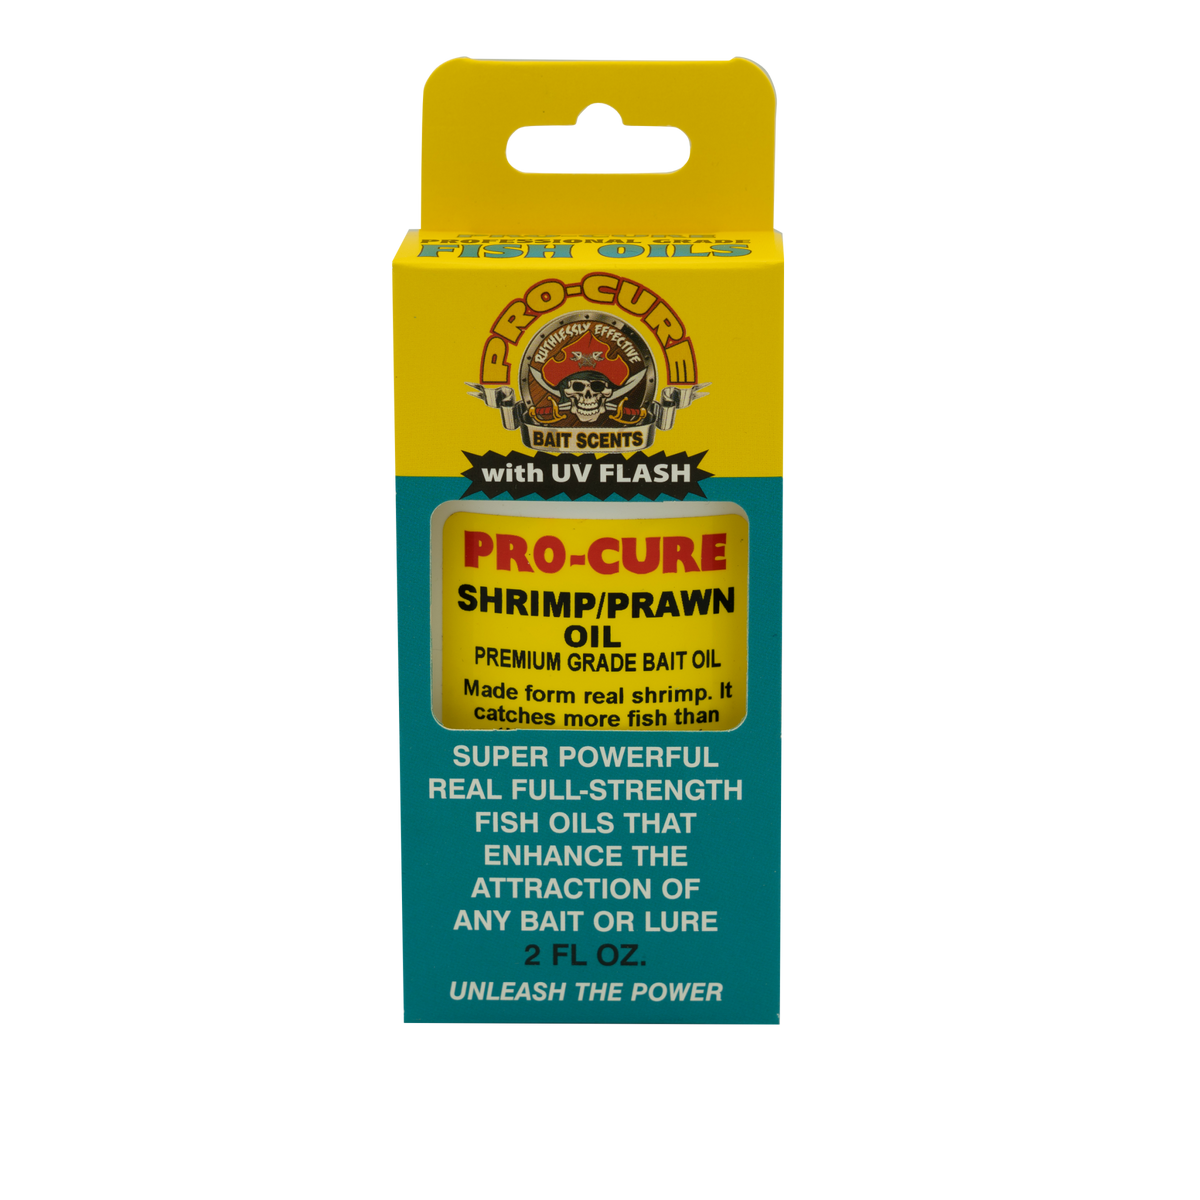 SHRIMP/PRAWN BAIT OIL – Pro-Cure, Inc